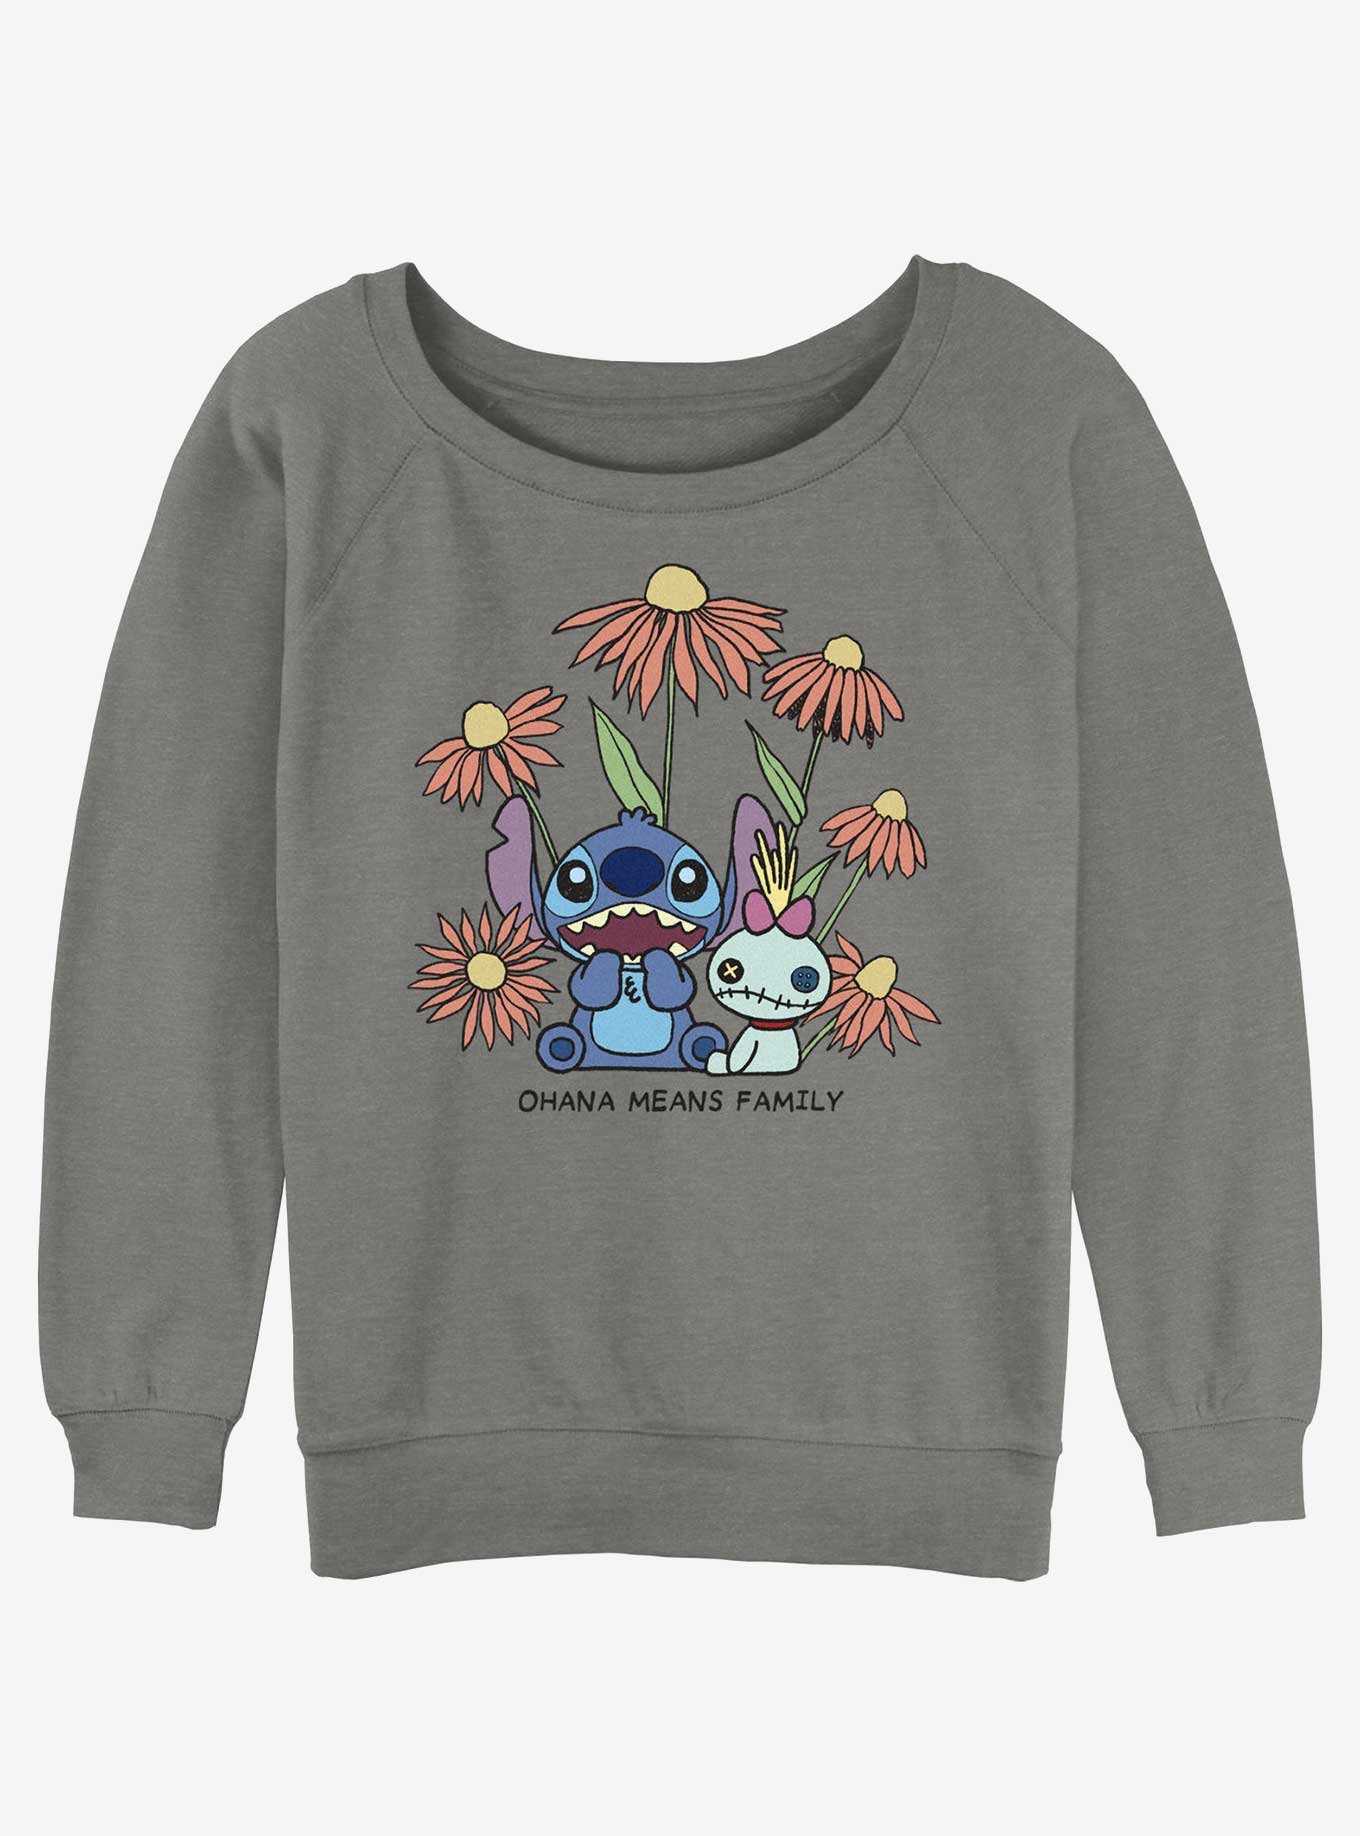 Disney Lilo & Stitch Chibi Floral Stitch and Scrump Girls Slouchy Sweatshirt, , hi-res